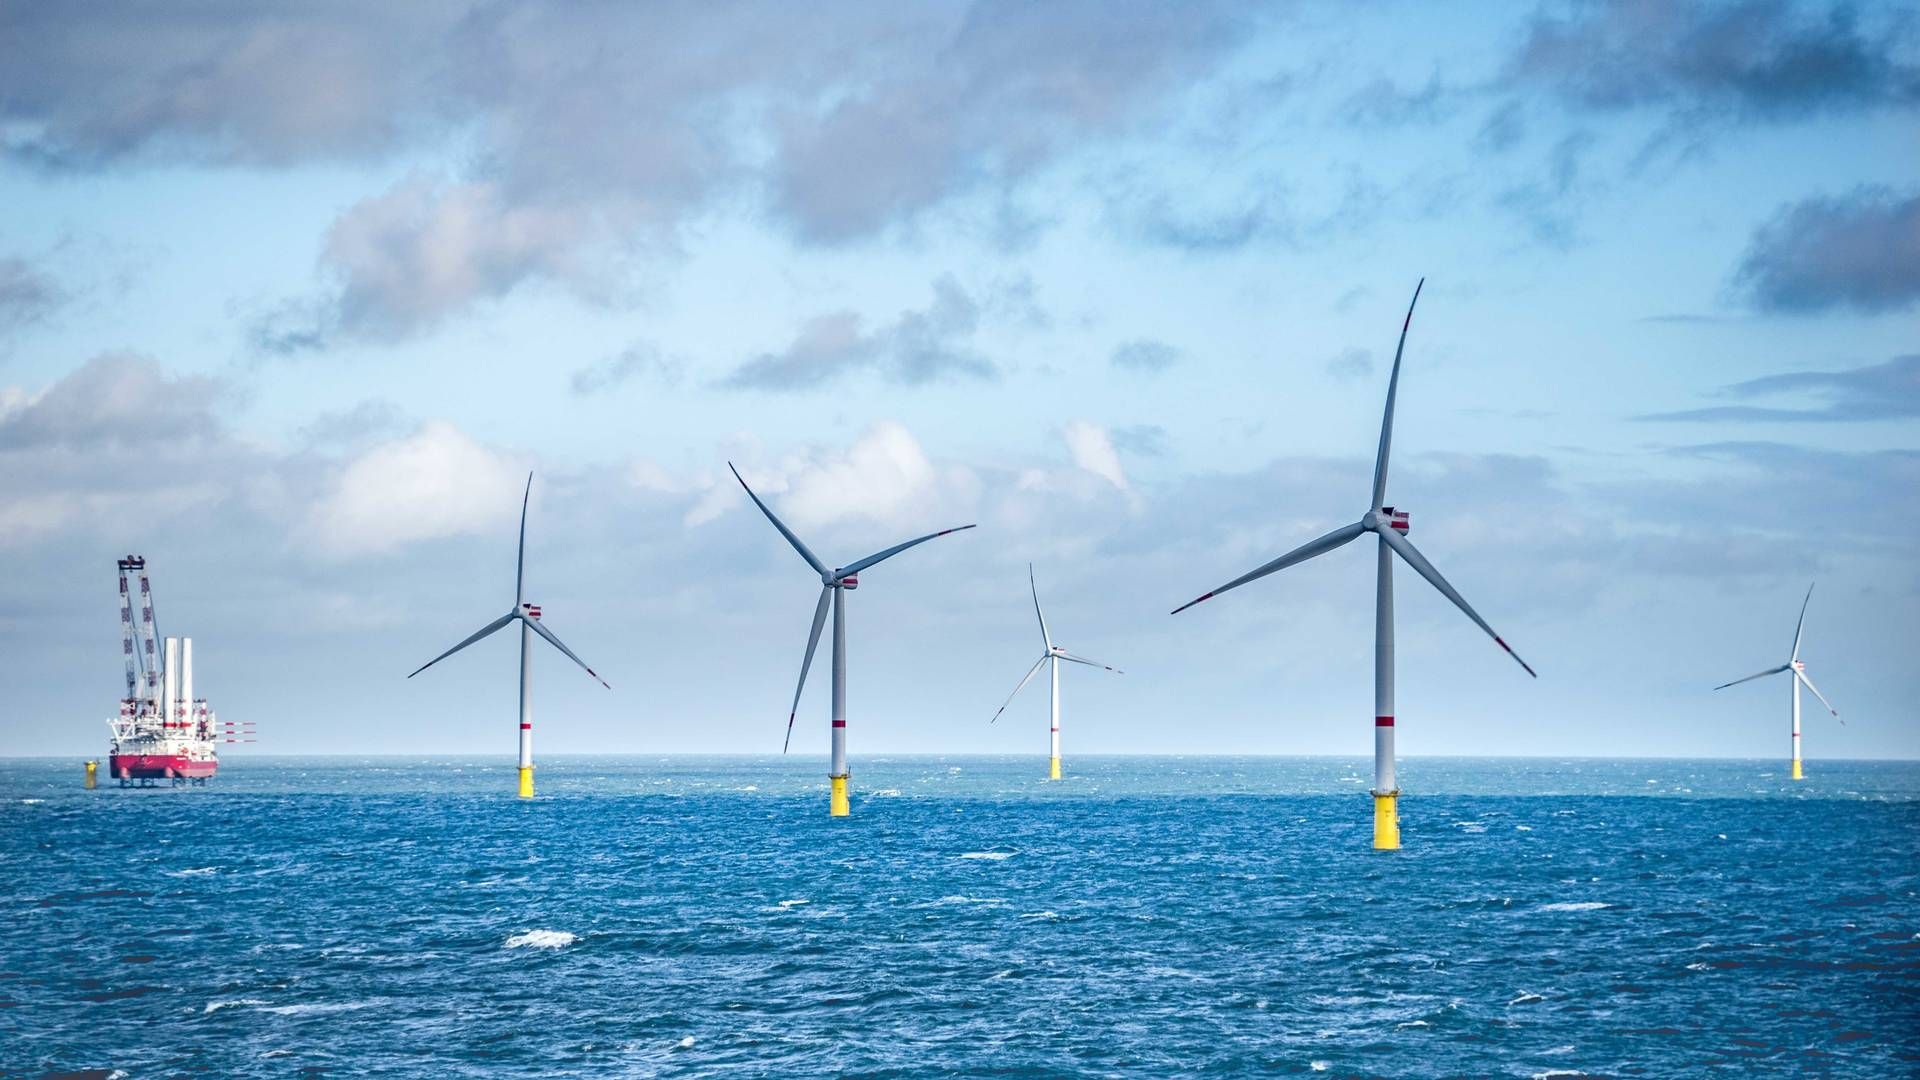 Når den er er klar og i drift, vil Vineyard Wind-vindmølleparken generere elektricitet til mere end 400.000 hjem og virksomheder i Massachusetts. | Foto: Illustration: Vineyard Wind